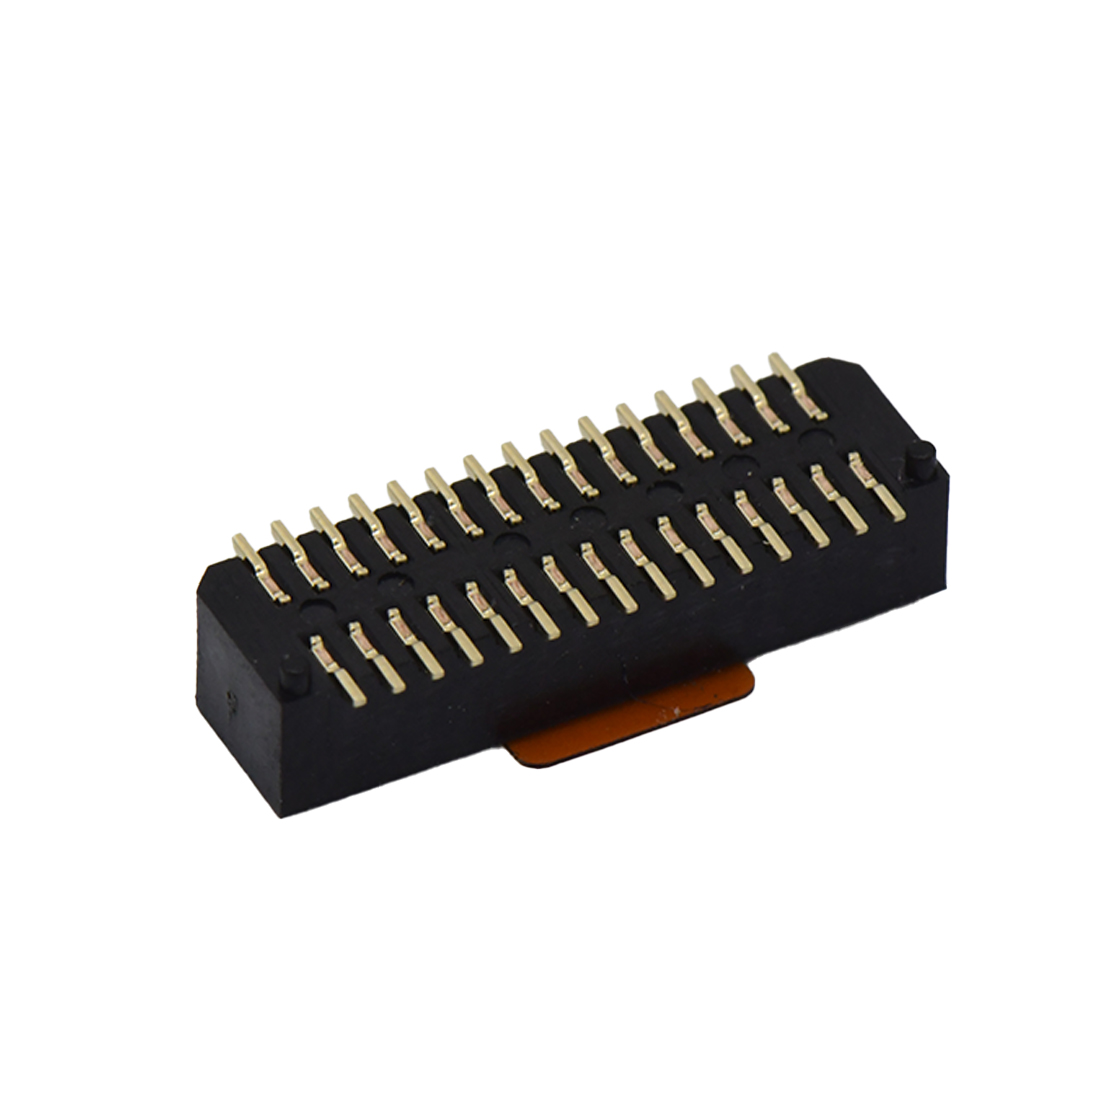 B0802板对板连接器Pitch 0.8 H2.9mm单槽双排 SMT型母座 30Pin黑色 Gold flash,PA9T 2300